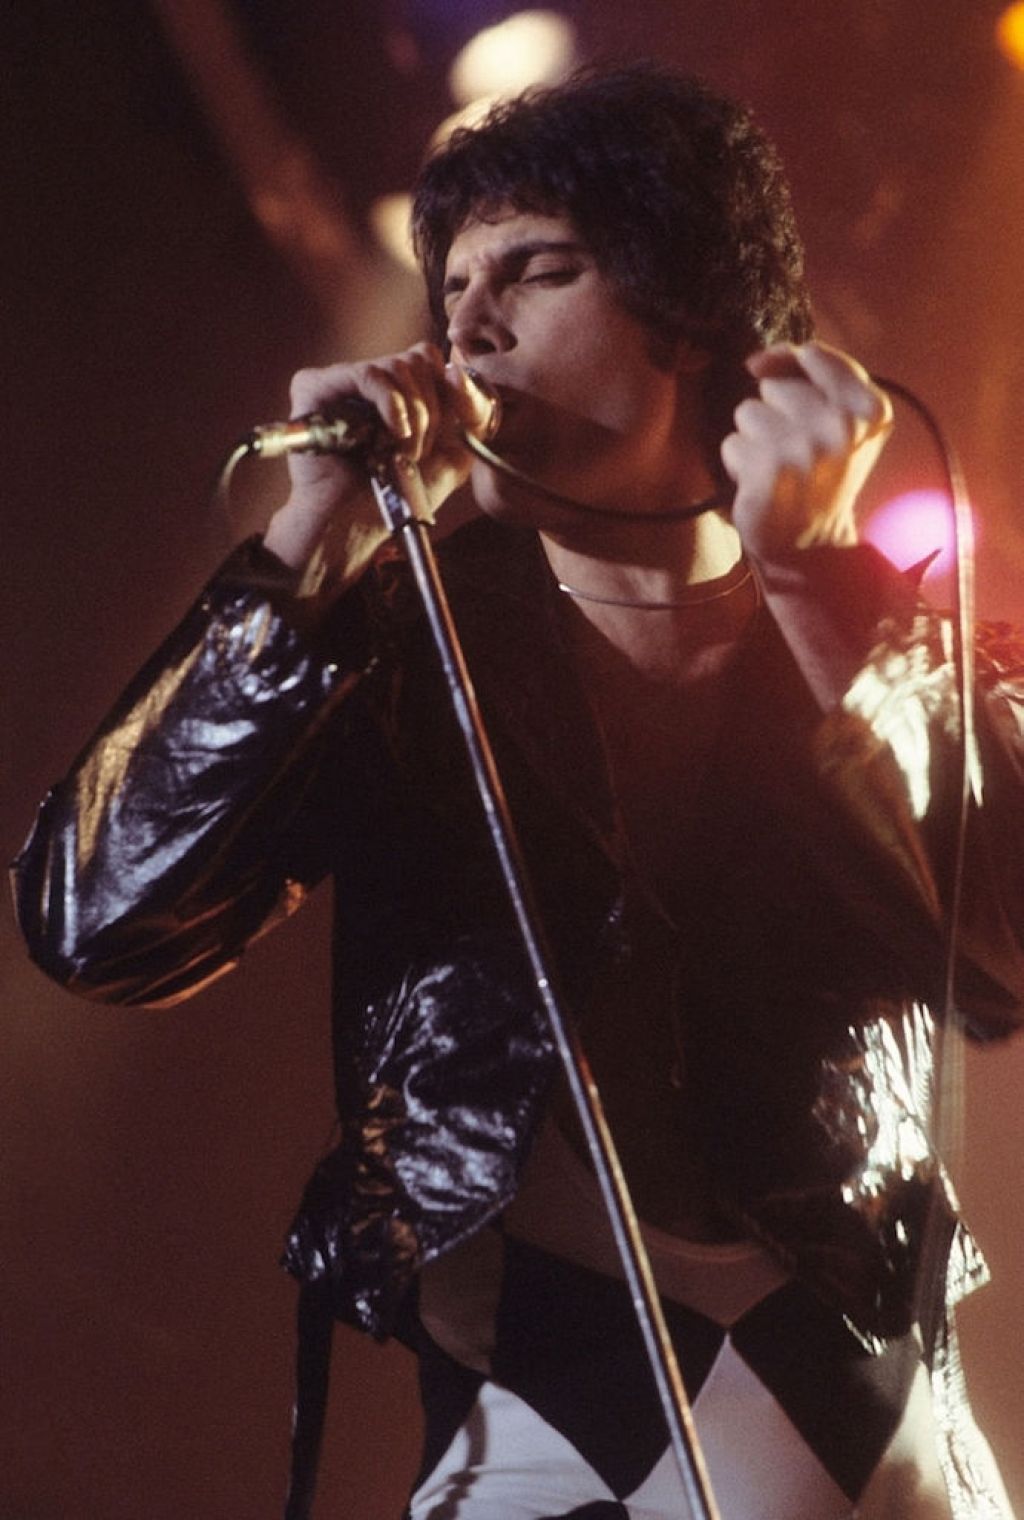 Η πιο δημοφιλής διασημότητα του Freddie Mercury τη χρονιά που γεννηθήκατε